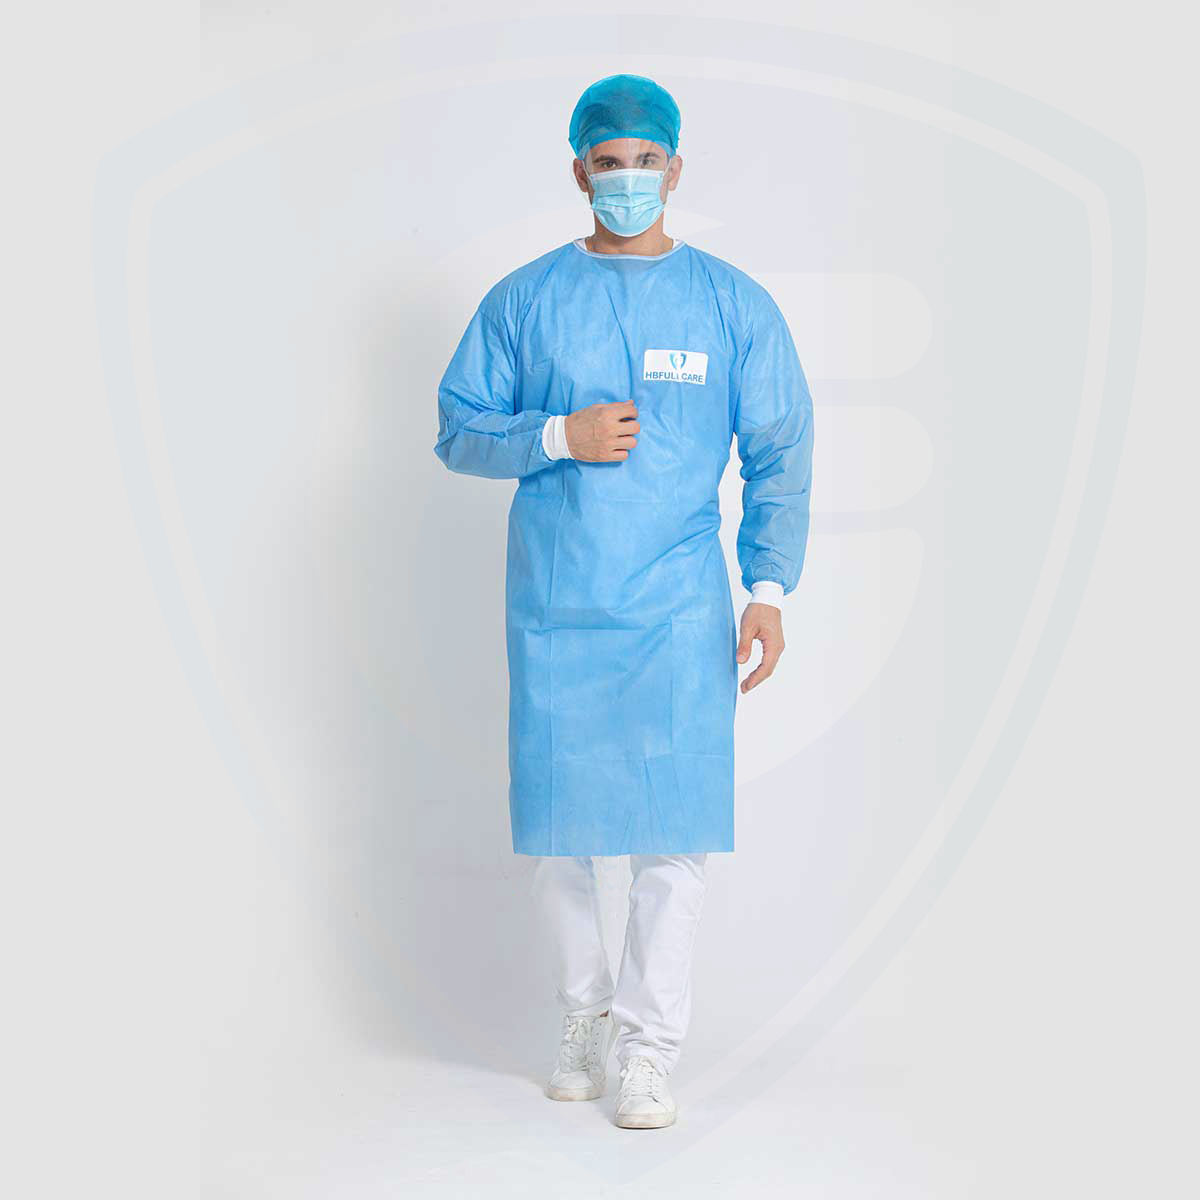 Camice chirurgico monouso in tessuto non tessuto SMS per la protezione dagli agenti infettivi